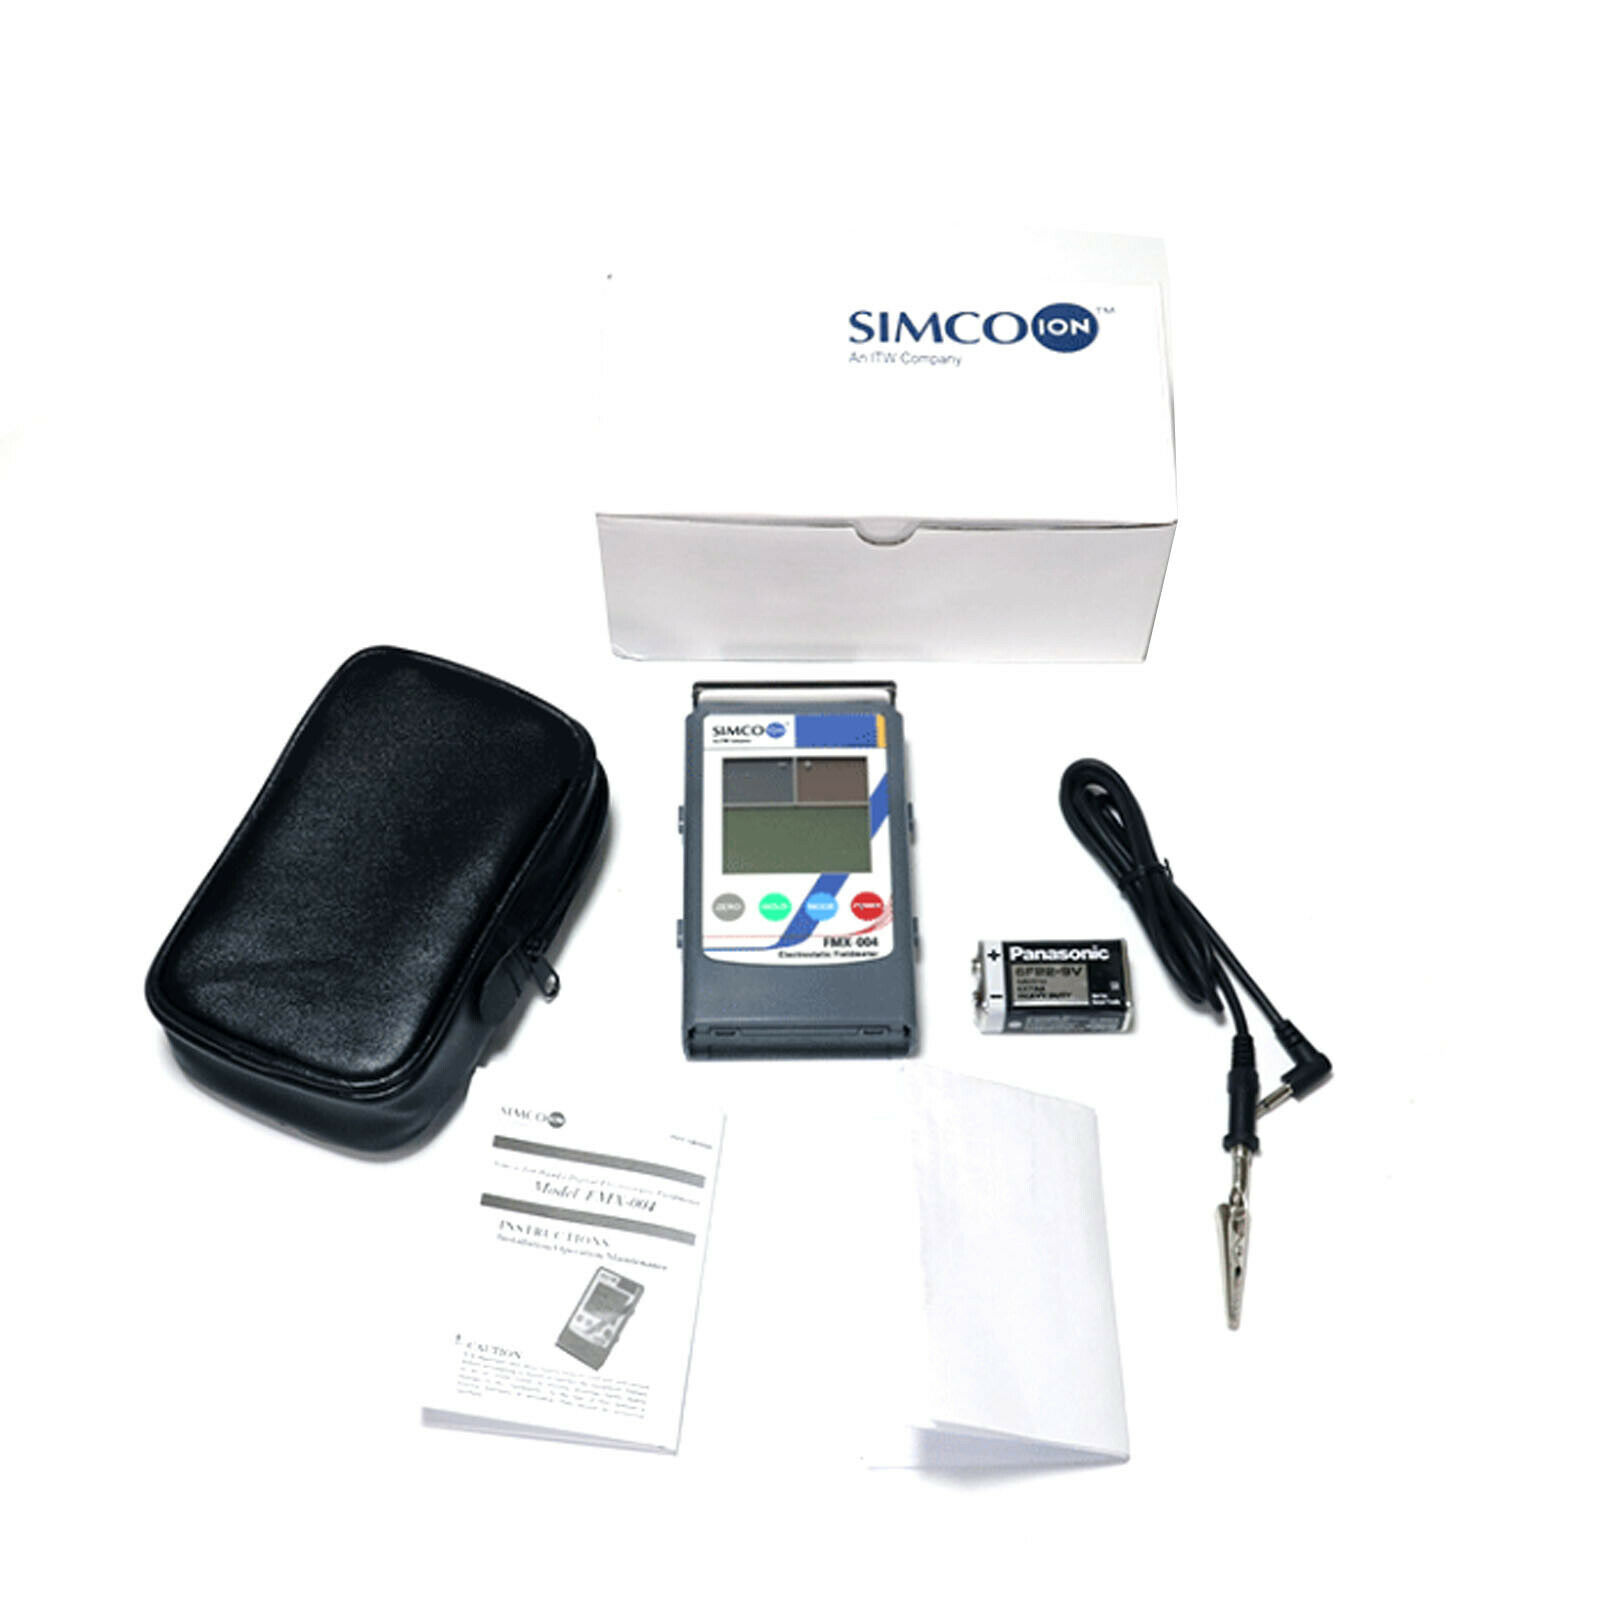 Giới thiệu về máy đo độ tĩnh điện Simco